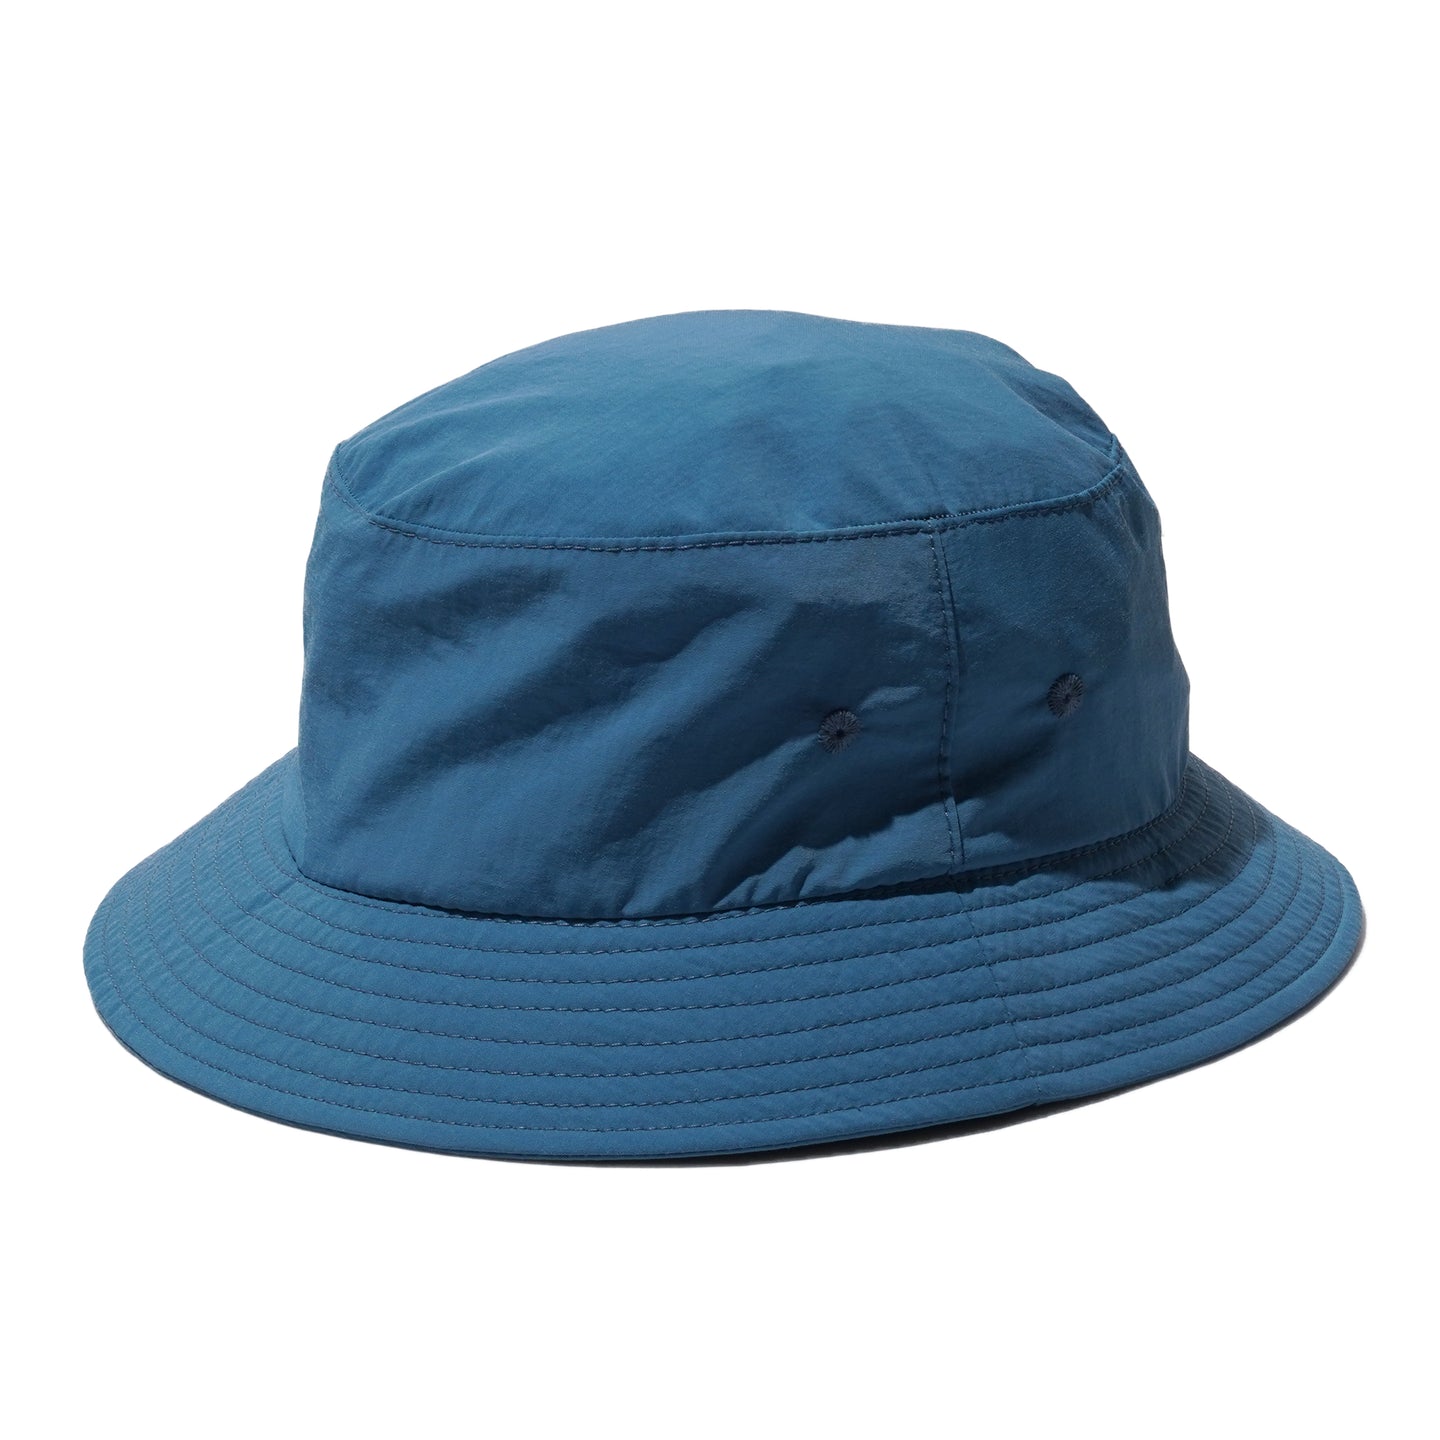 LITE YEAR ECONYL BUCKET HAT (MARINE BLUE)